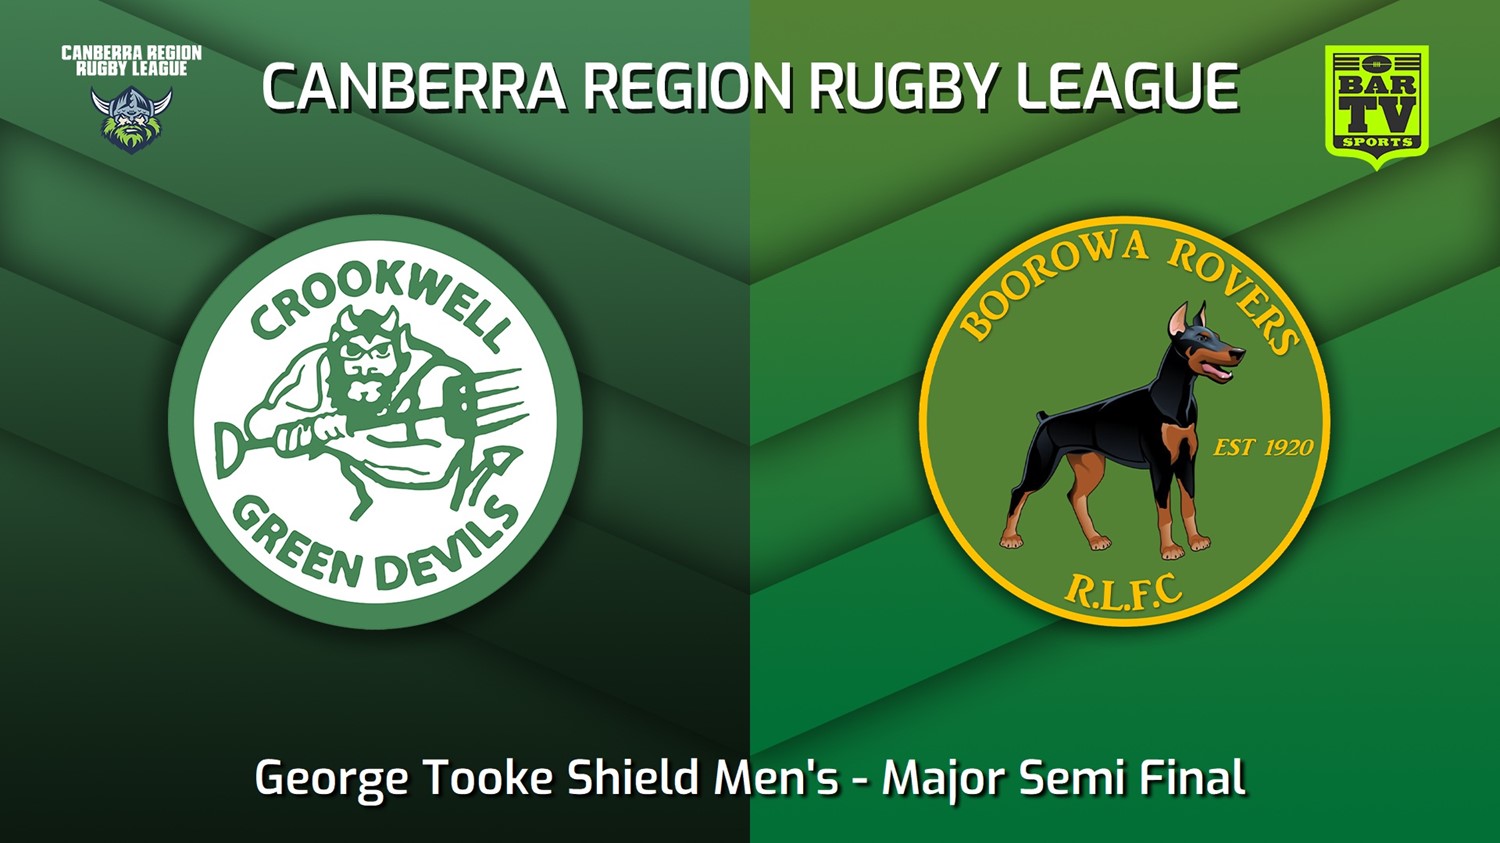 230826-Canberra Major Semi Final - George Tooke Shield Men's - Crookwell Green Devils v Boorowa Rovers Minigame Slate Image